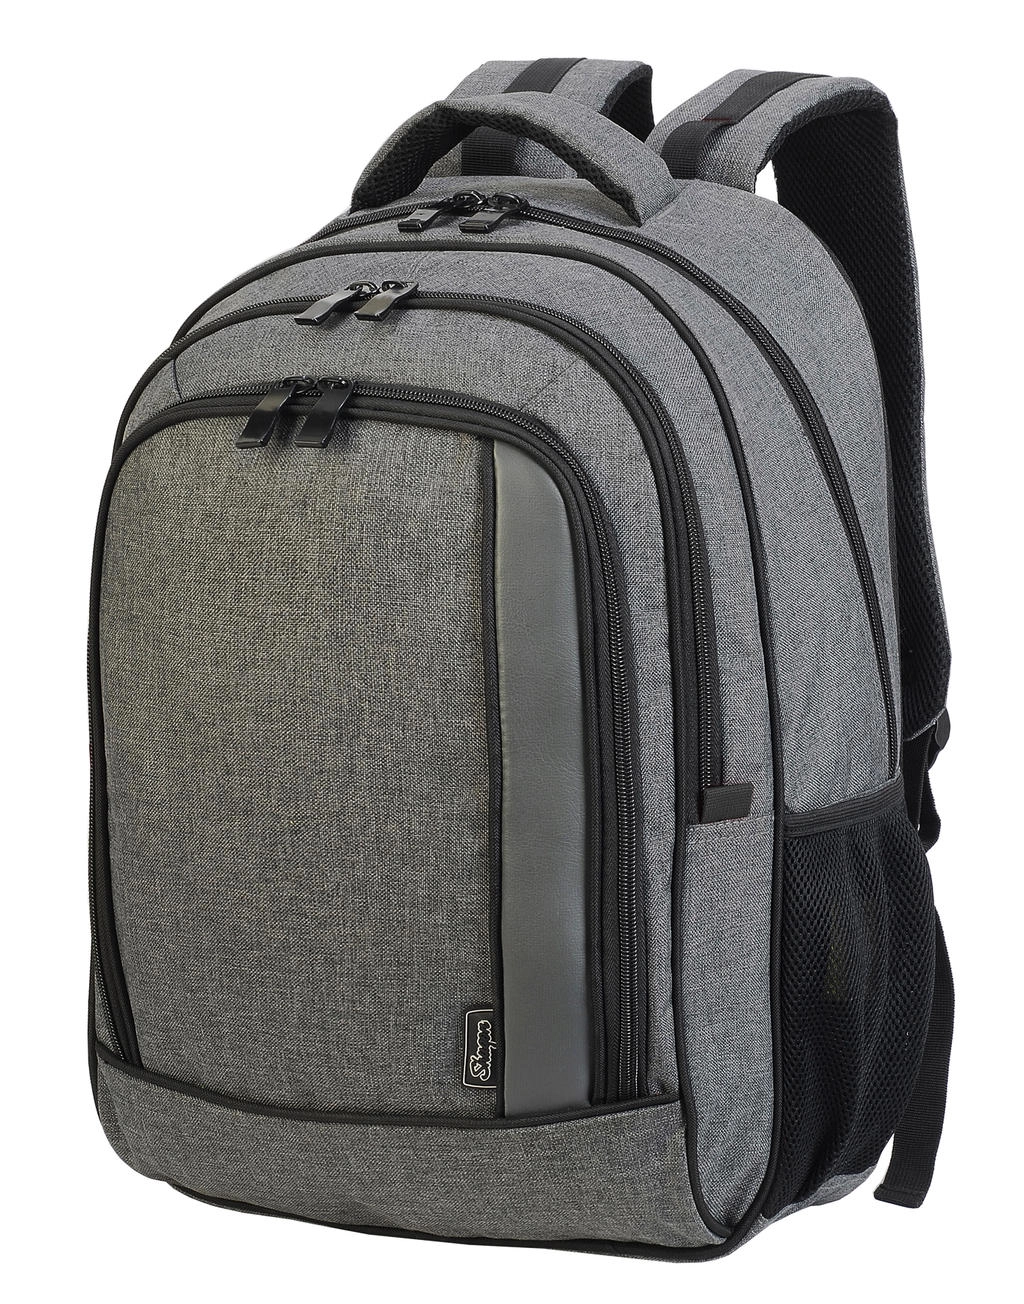 Frankfurt Smart Laptop Backpack zum Besticken und Bedrucken mit Ihren Logo, Schriftzug oder Motiv.